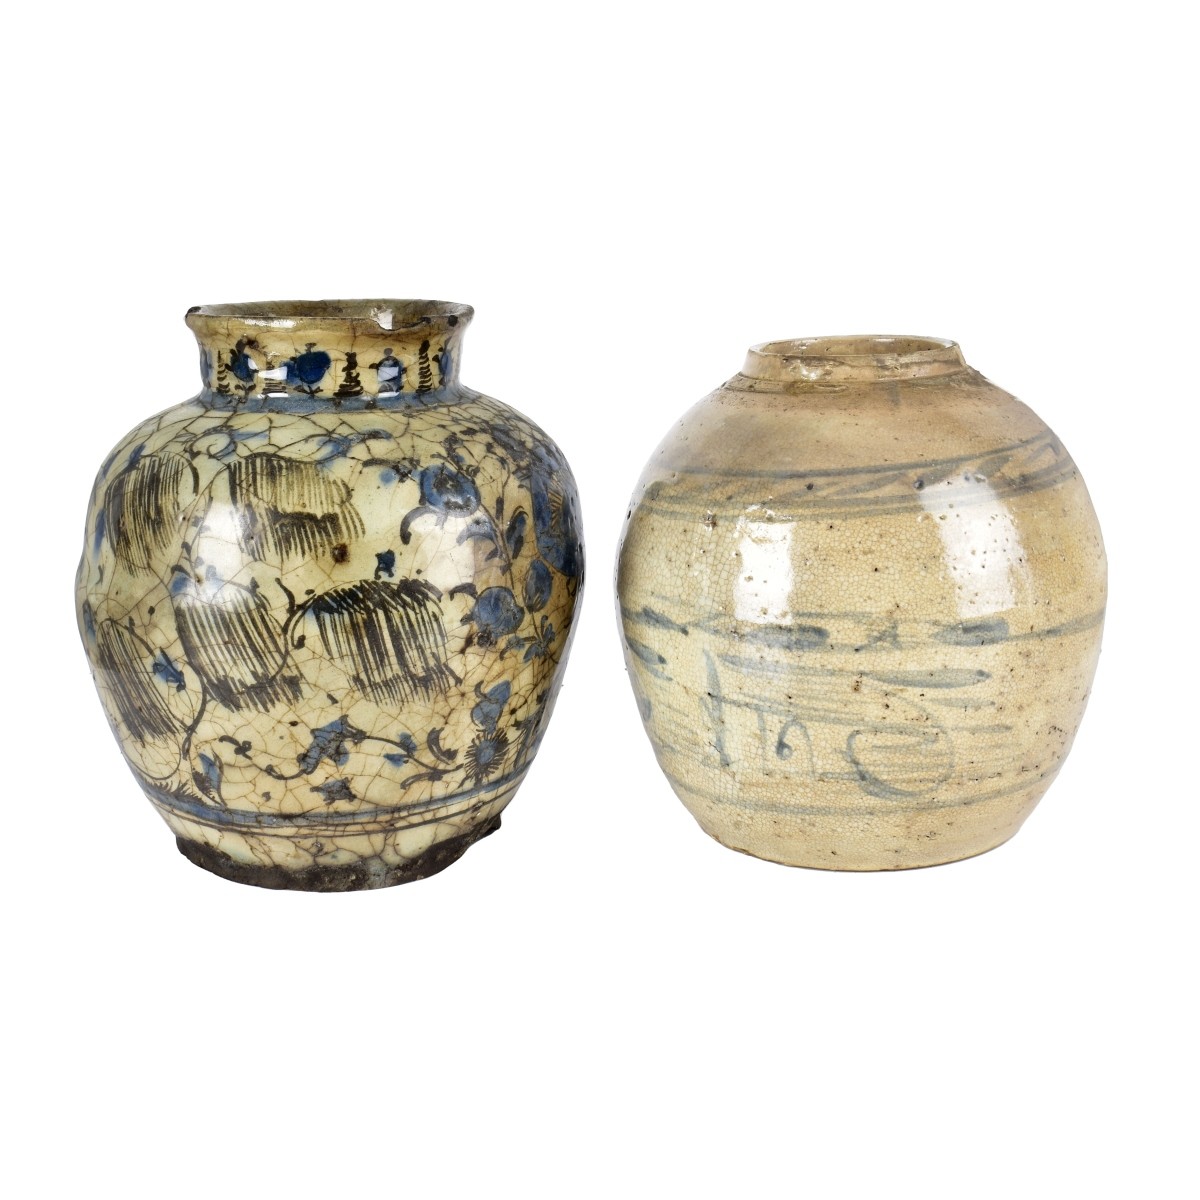 Two Antique Porcelain Jars